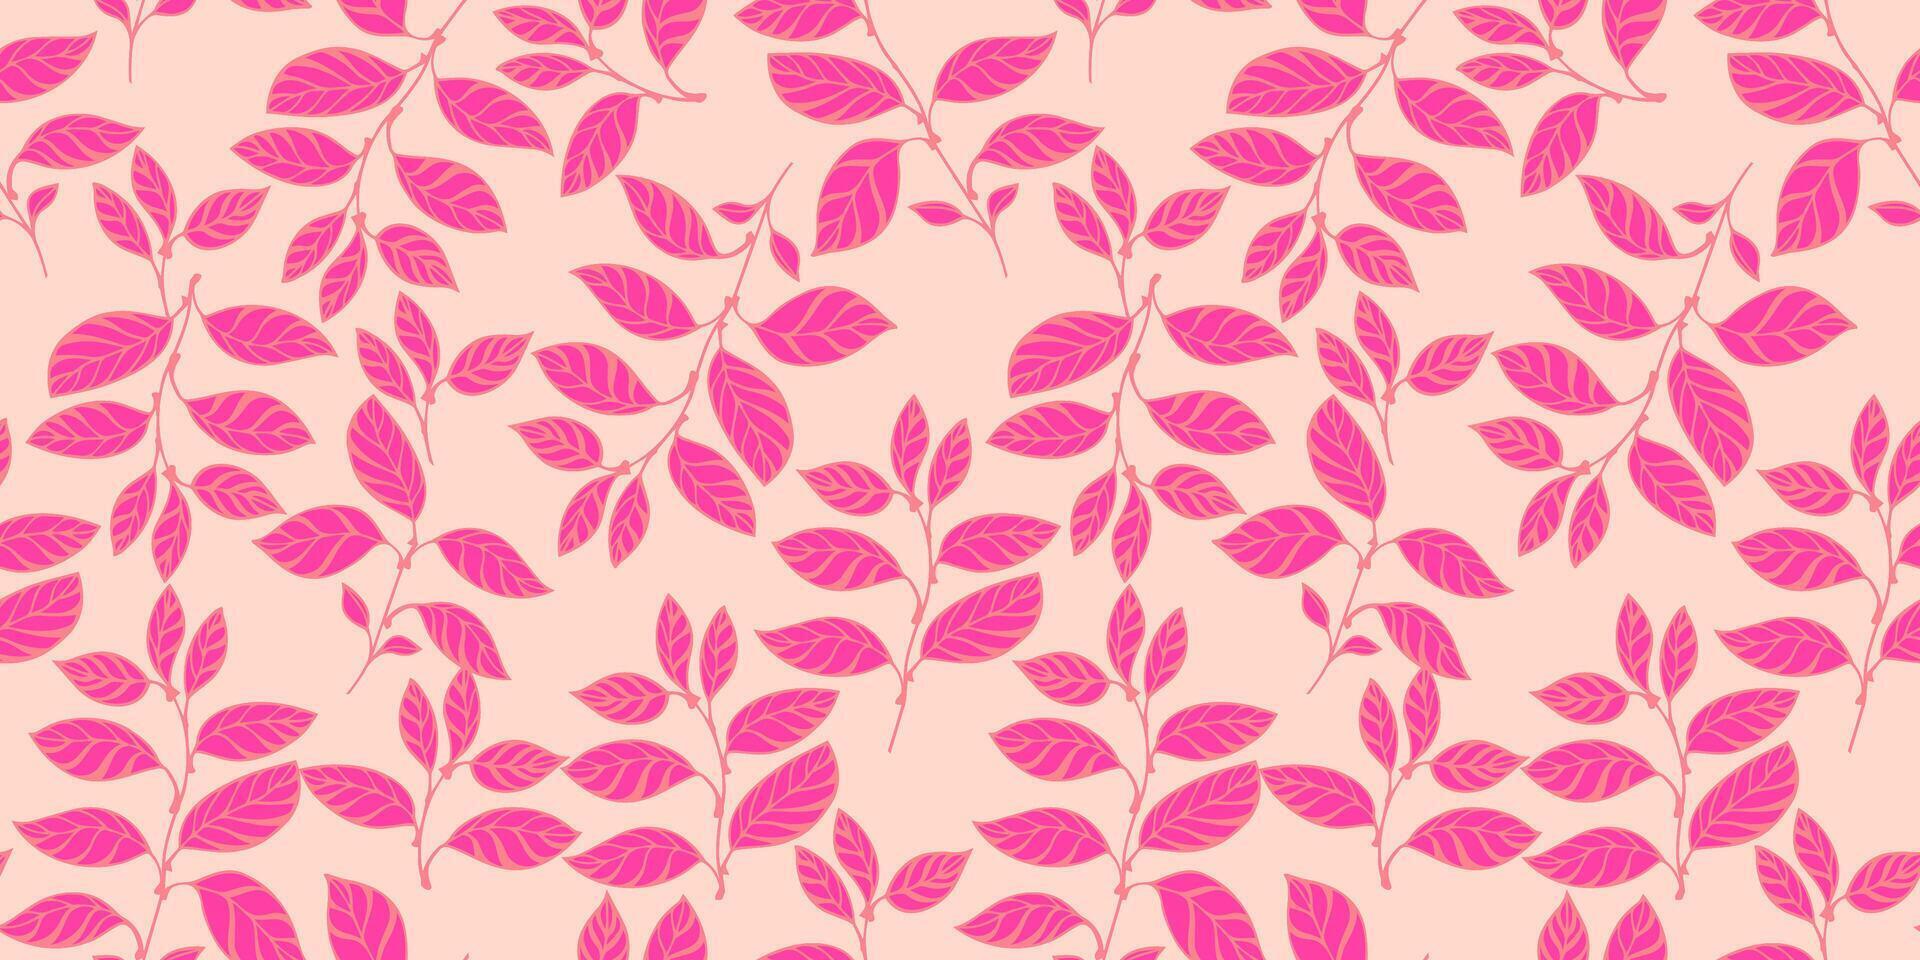 creatief, abstract, modern, roze bladeren takken met elkaar verweven in een naadloos patroon. vector hand- getrokken. gestileerde gemakkelijk bloemen stengels Aan een licht beige achtergrond. sjabloon voor ontwerp, textiel, mode